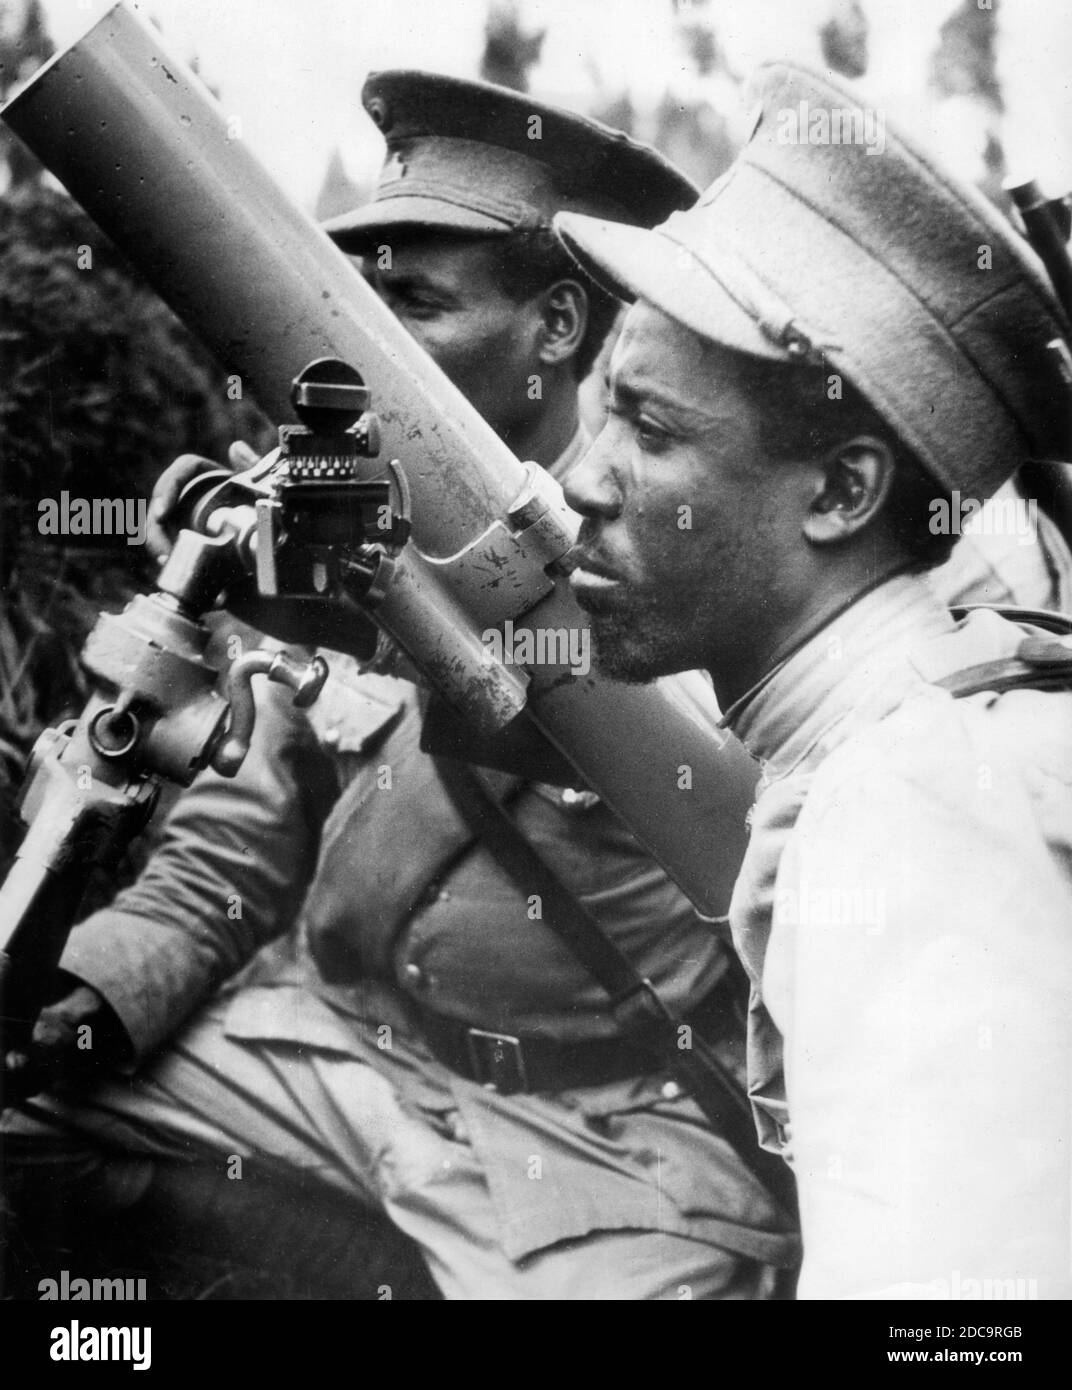 Les troupes de l'armée en Éthiopie s'entrainement sur un mortier de tranchée près d'Addis-Abeba en août 1935. La légende de cette photo d'actualité indique : « bien que l'Éthiopie soit en arrière à bien des égards, elle aura de nombreux outils modernes de la guerre lorsqu'elle rencontrera les forces expéditionnaires du premier ministre italien Mussolini. On enseigne à ce guerrier éthiopien l'utilisation du mortier de tranchée, une arme entièrement nouvelle pour l'armée de l'empereur Haile Salassie. Pour voir mes autres images WW II, recherchez: Prestor vintage WW II Banque D'Images